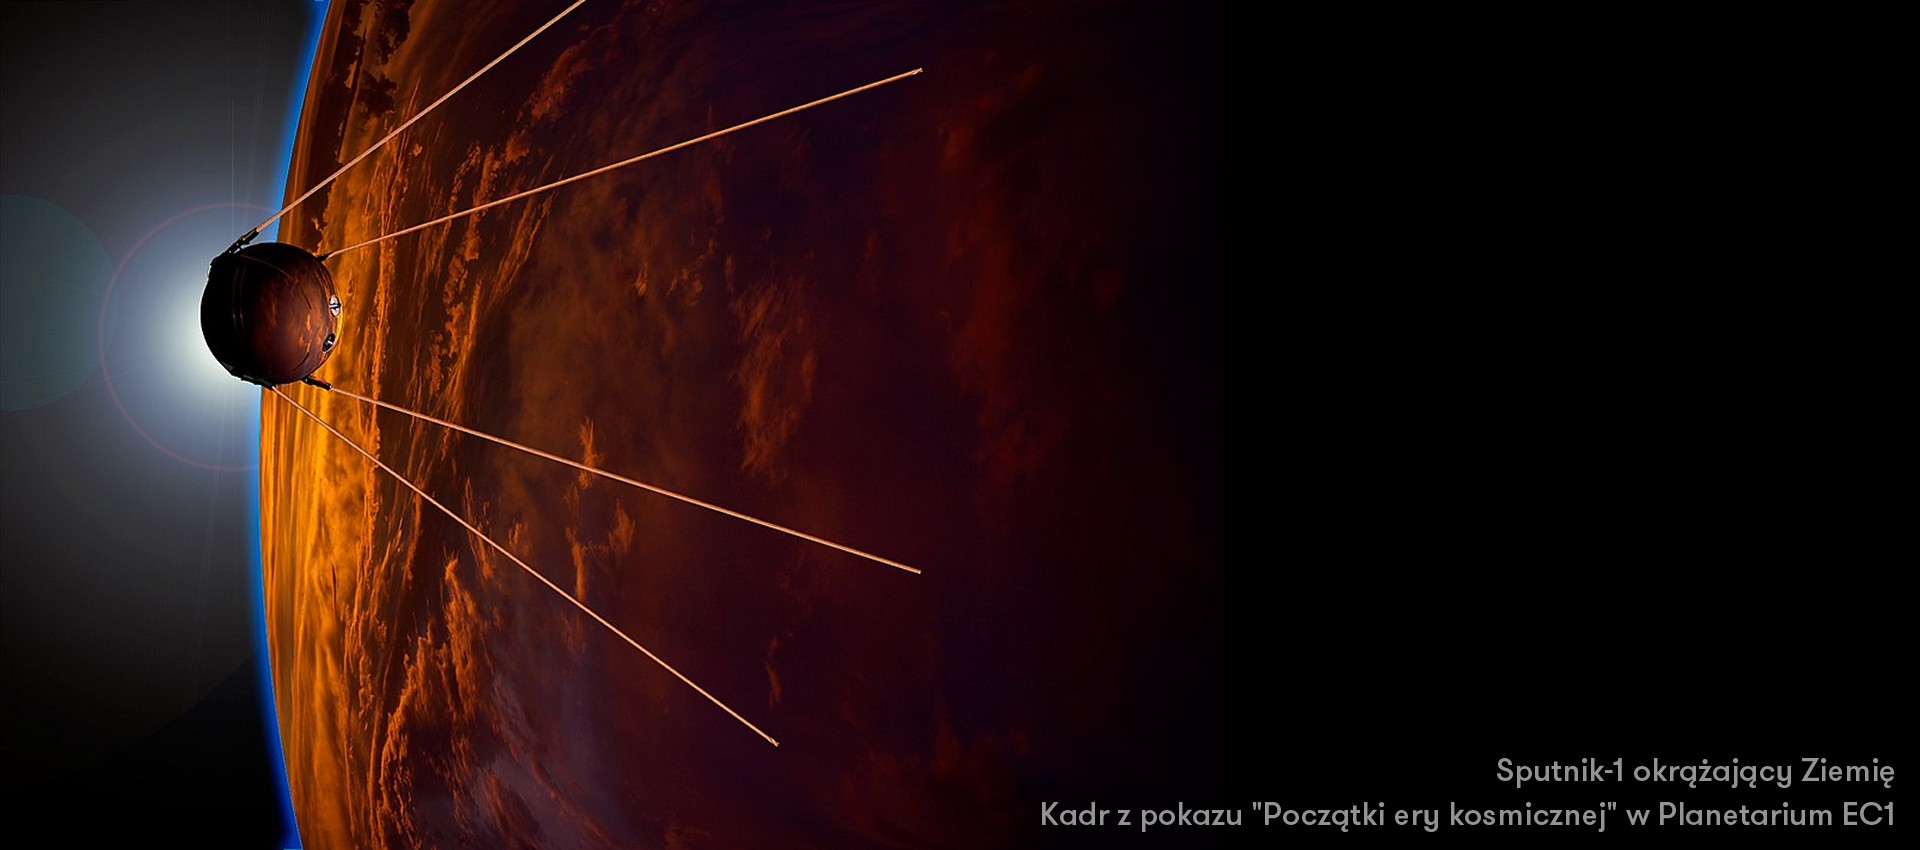 Spotnik-1 okrąża Ziemię - kadr z pokazu "Początki ery kosmicznej"